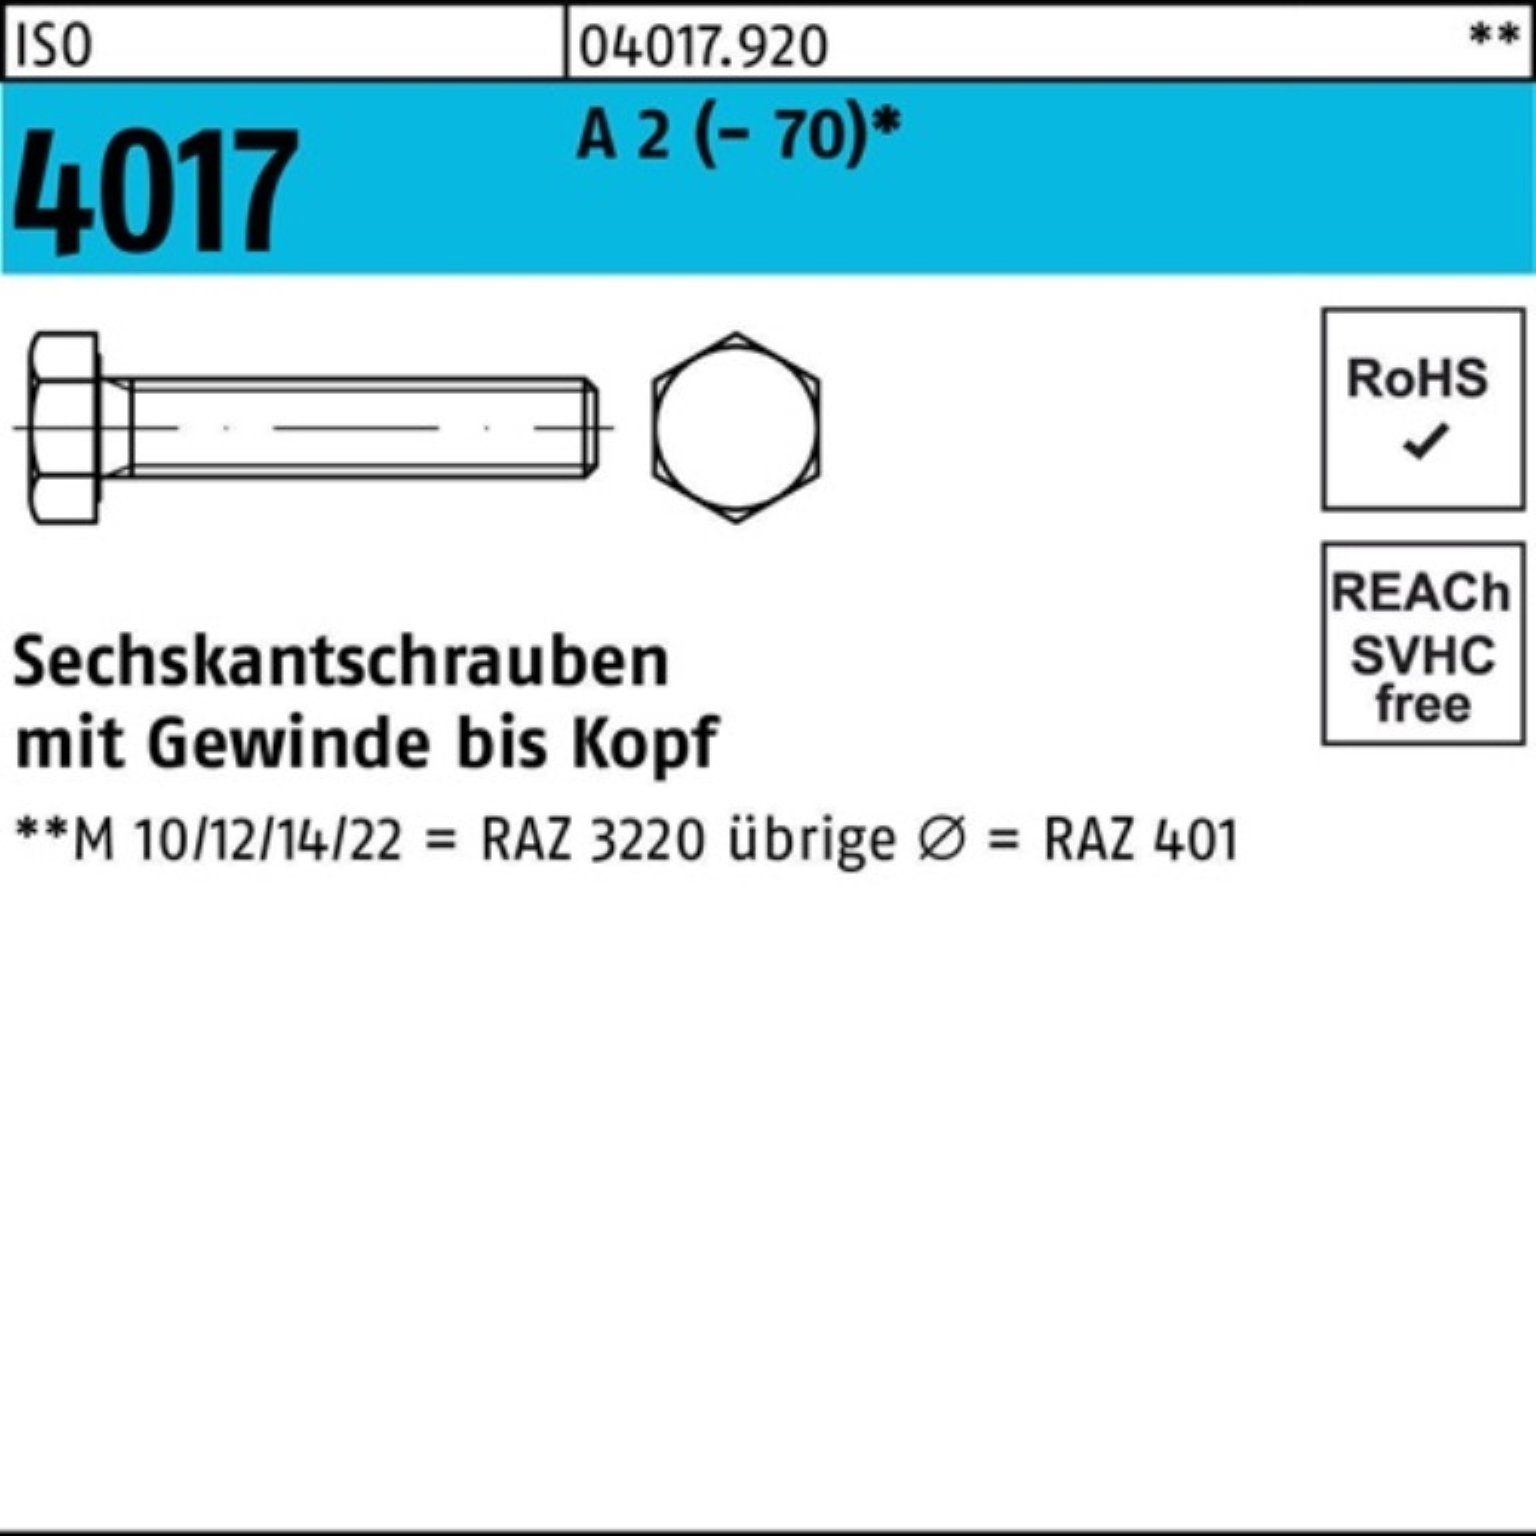 Bufab Sechskantschraube 100er Pack Sechskantschraube ISO 4017 VG M20x 60 A 2 (70) 25 Stück